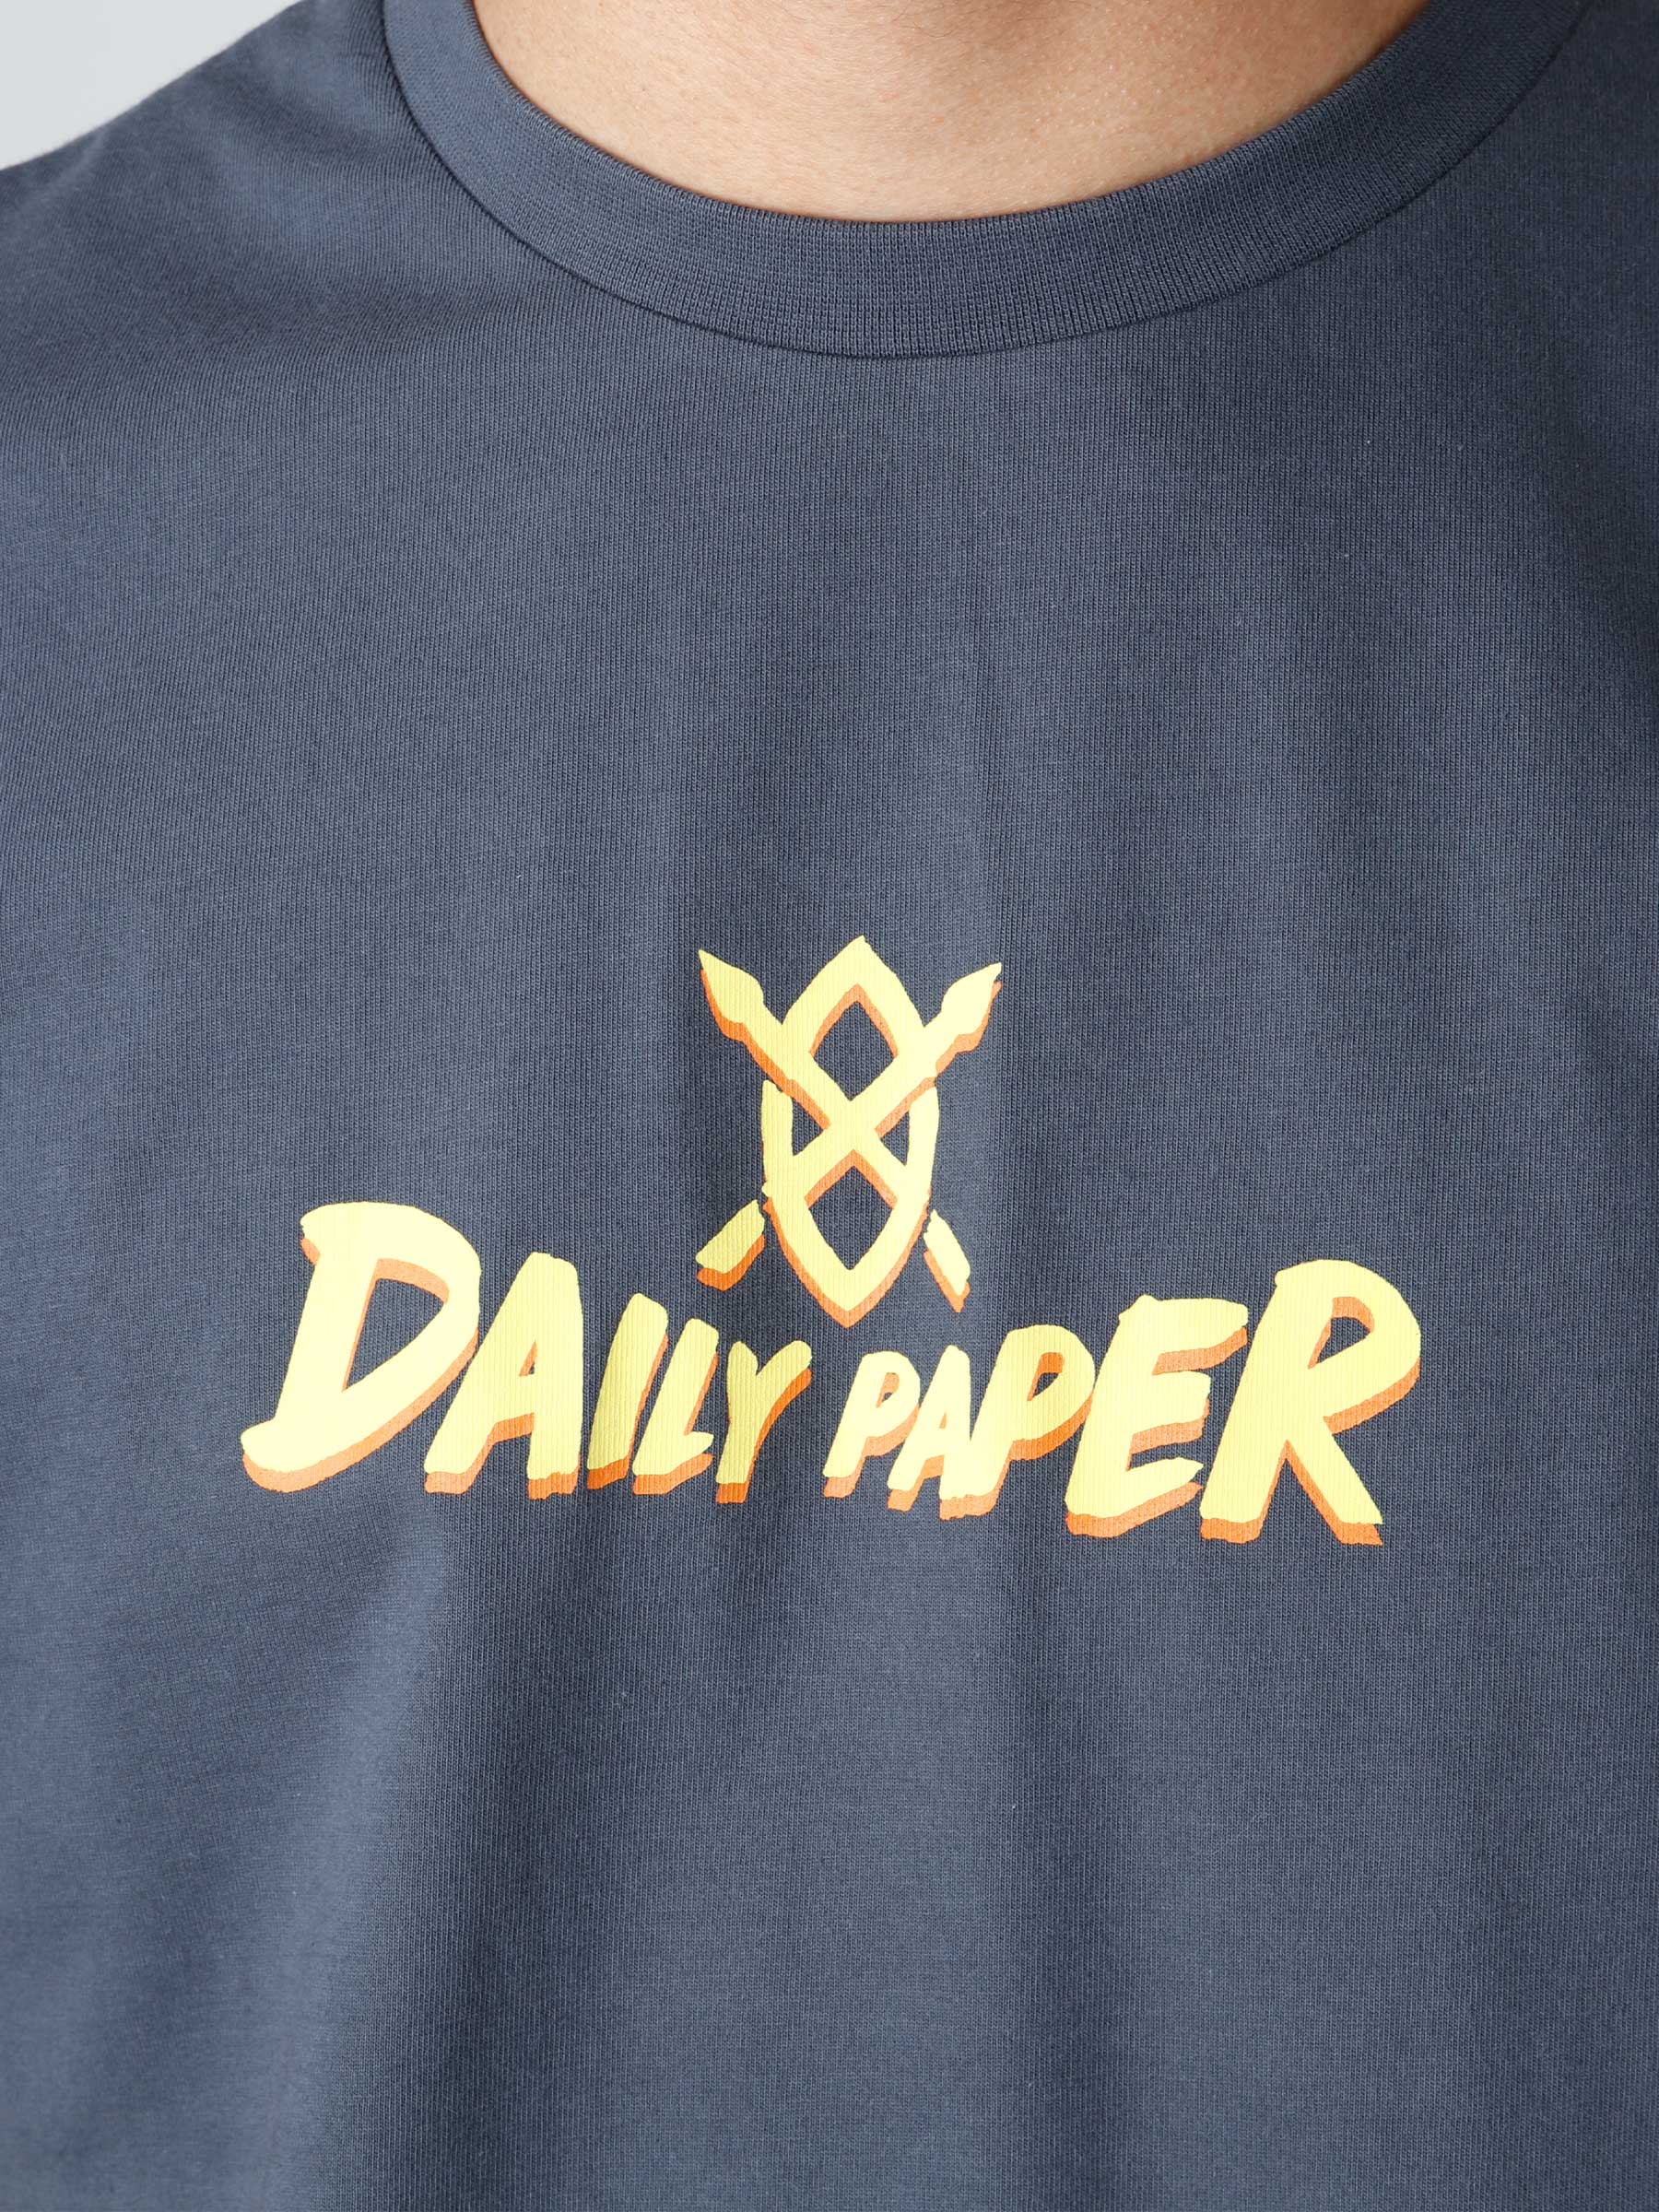 Daily Paper Reild T-shirt